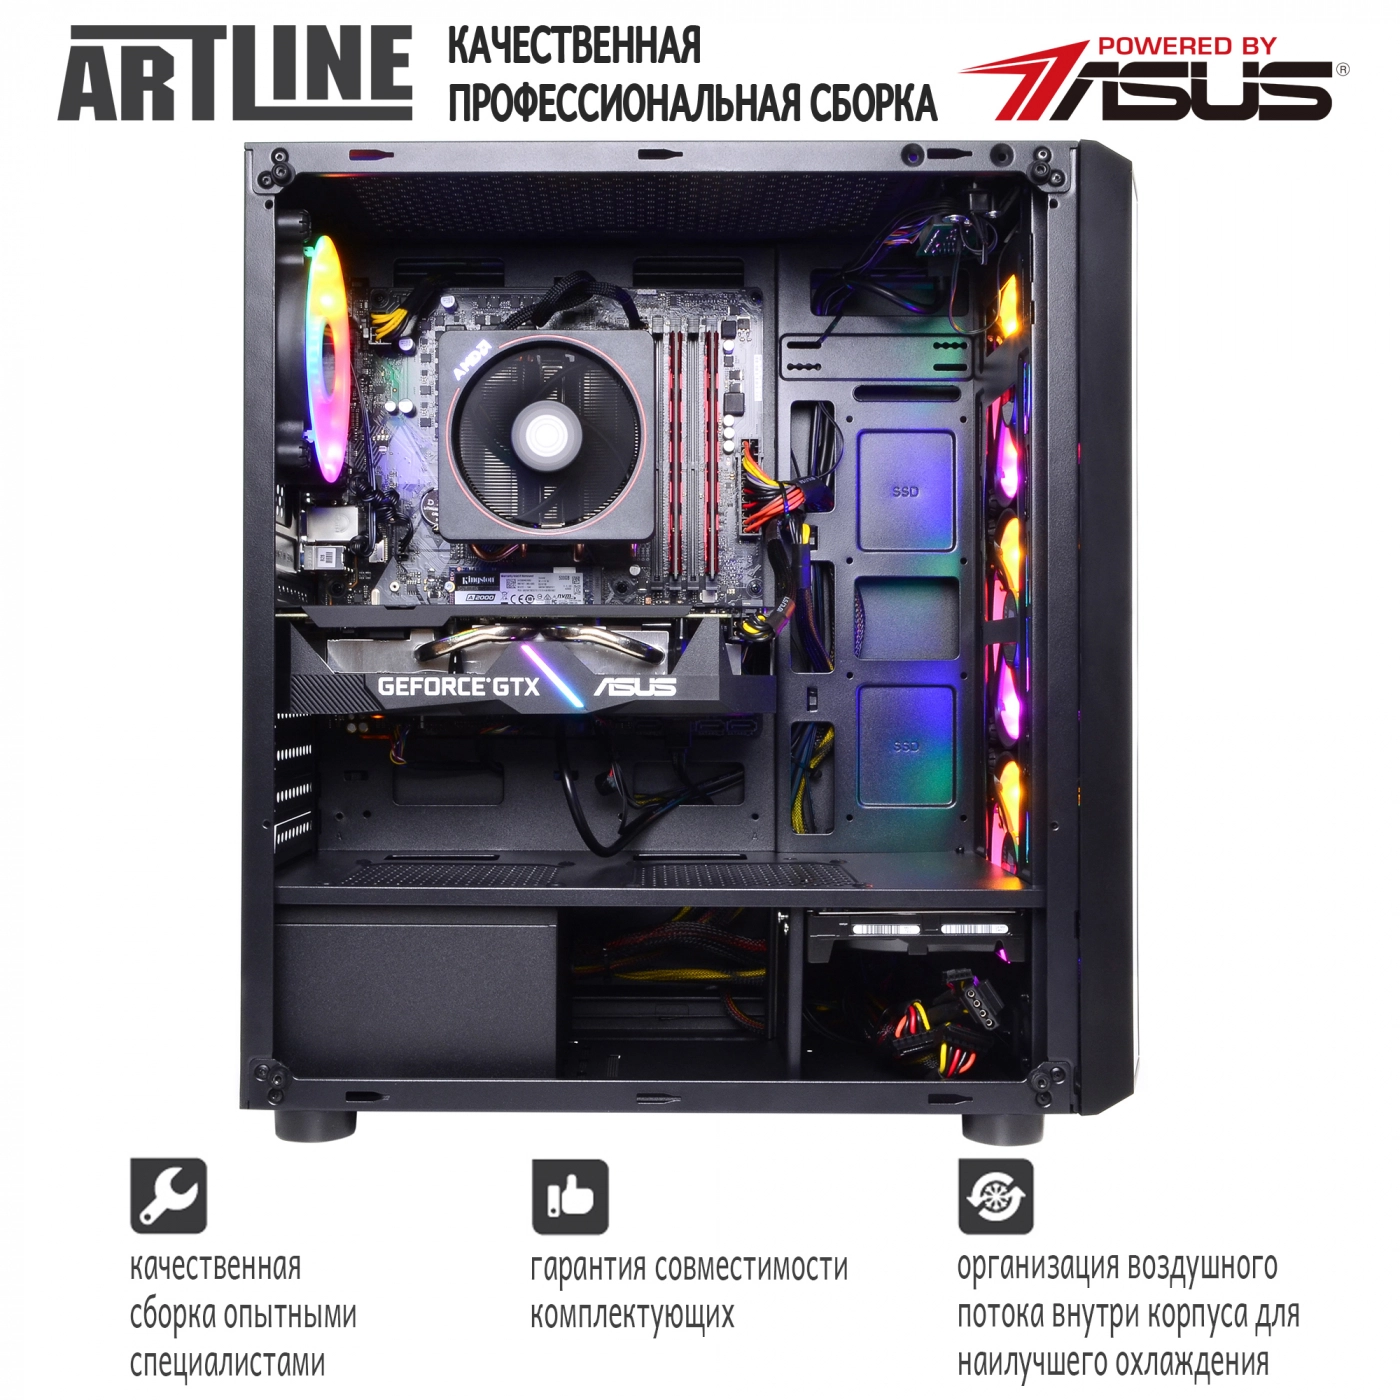 Купить Компьютер ARTLINE Gaming X66v07 - фото 9